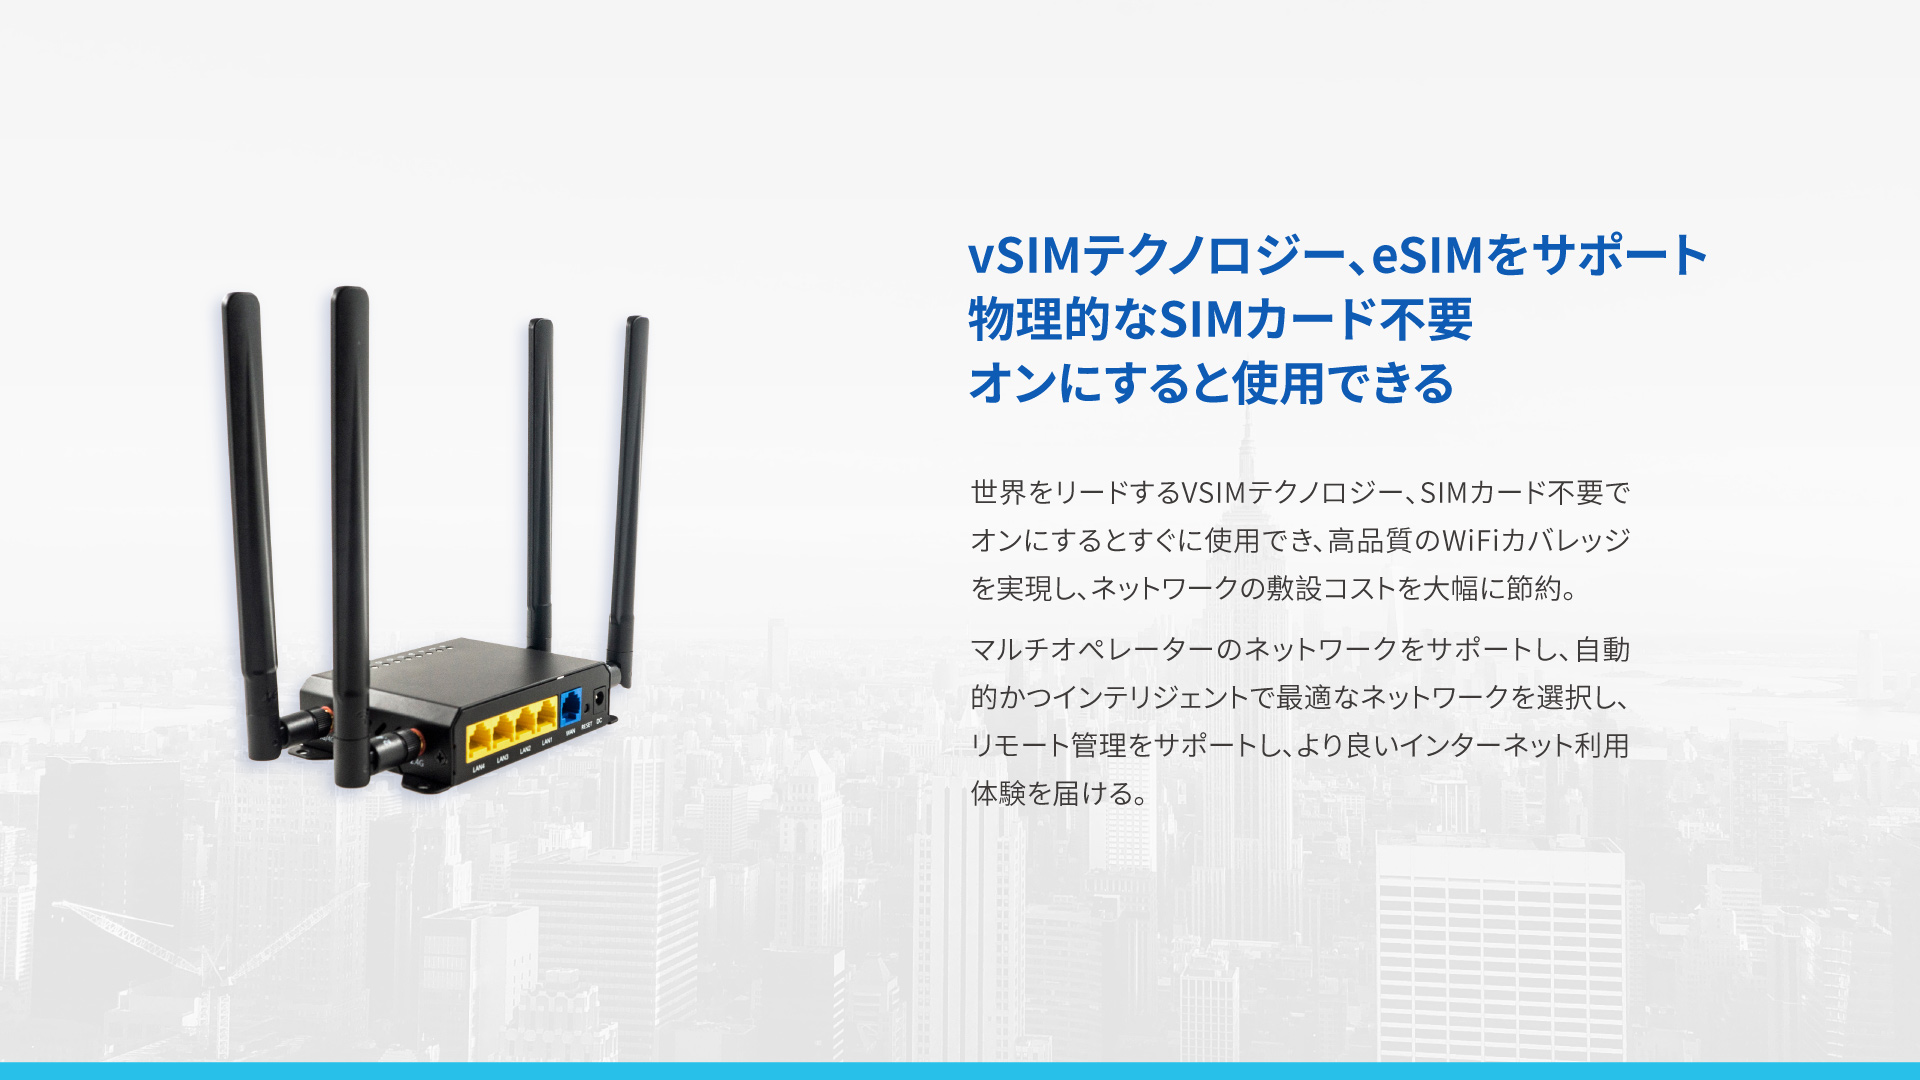 VSIM 4G産業用ルーター TR100